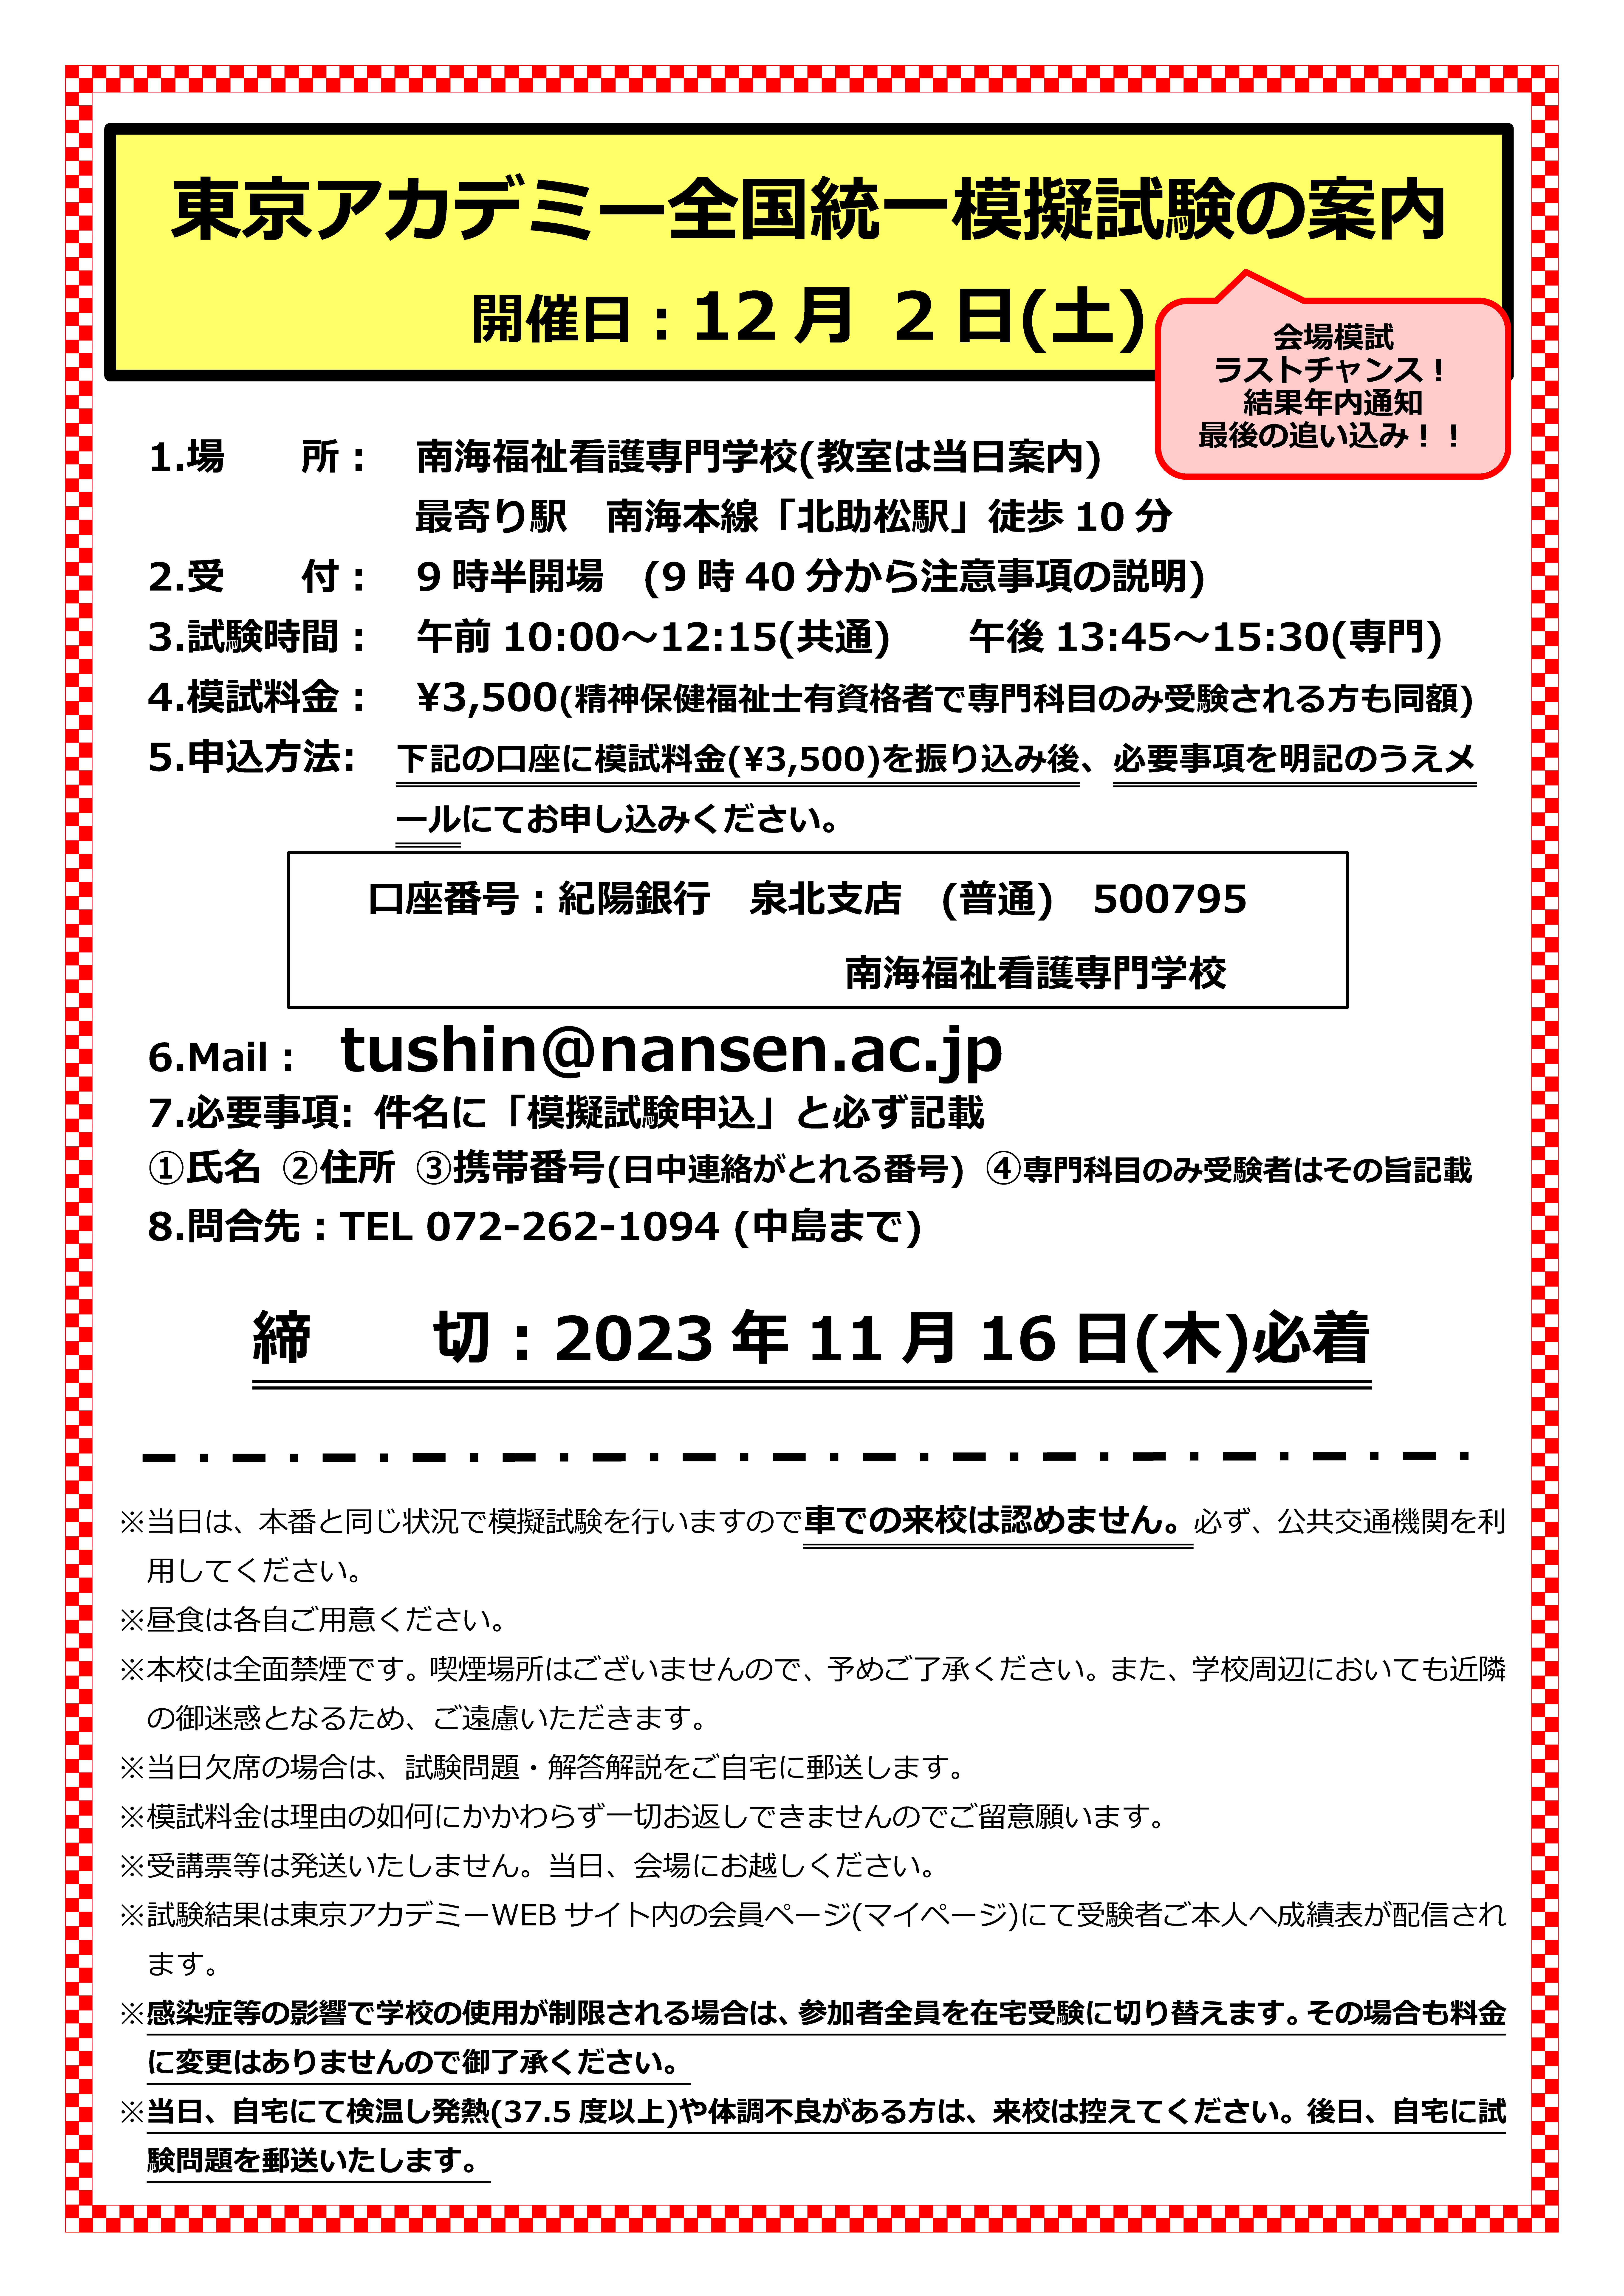 東京アカデミー 社会福祉士国家試験 全国統一模擬試験の案内